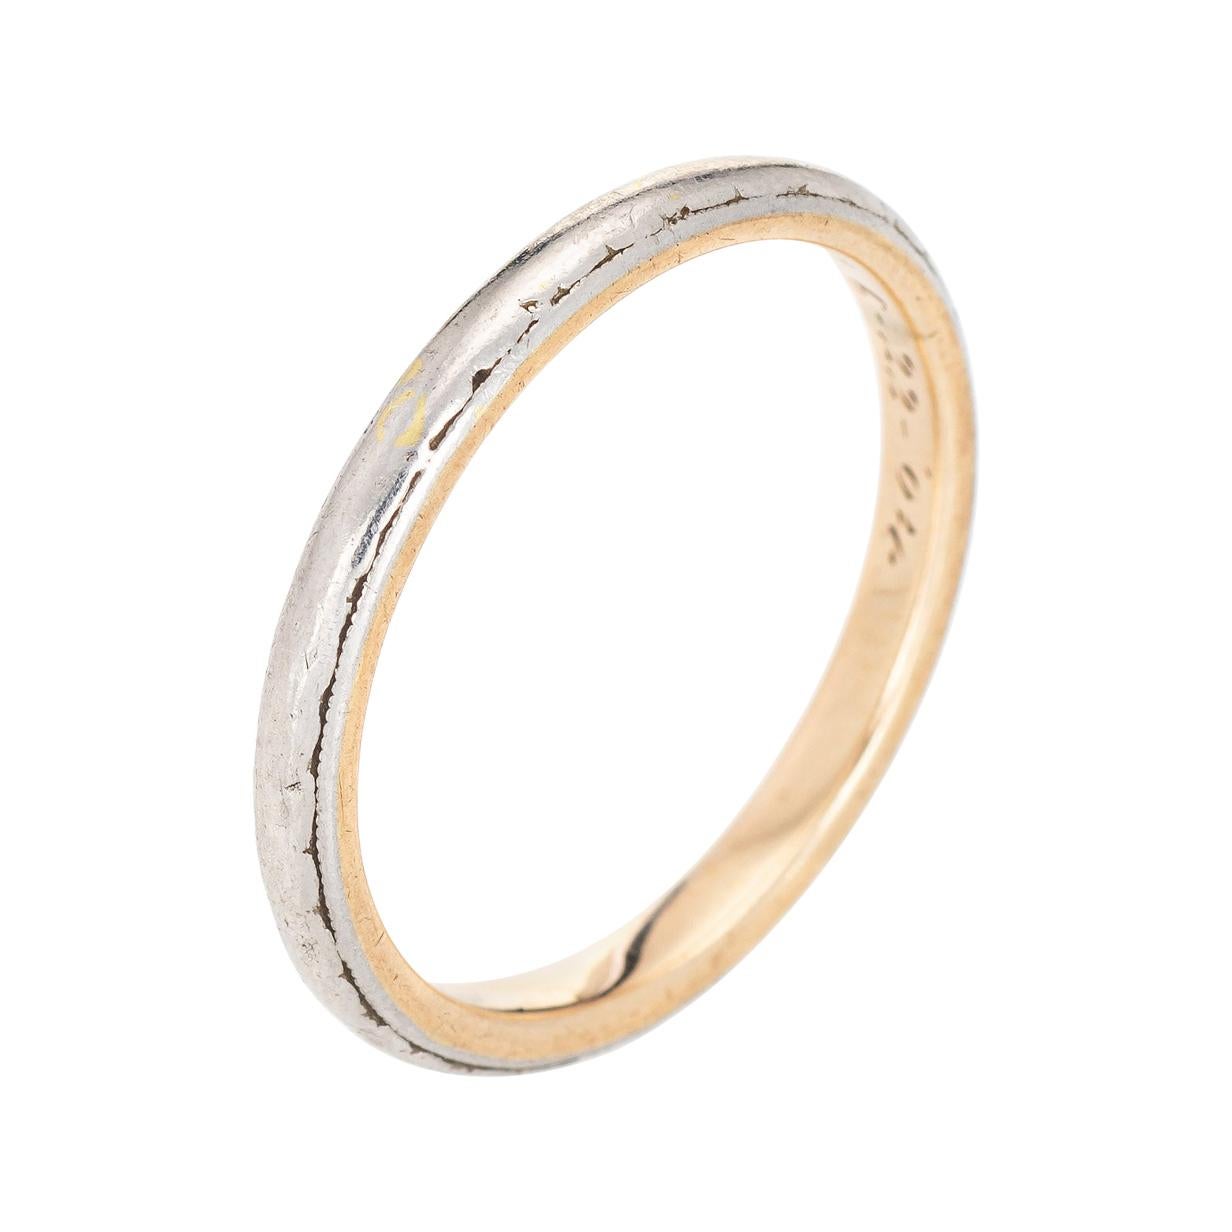 Antique Edwardian c1904 Wedding Band Vintage Ring 14k Platinum Jewelry